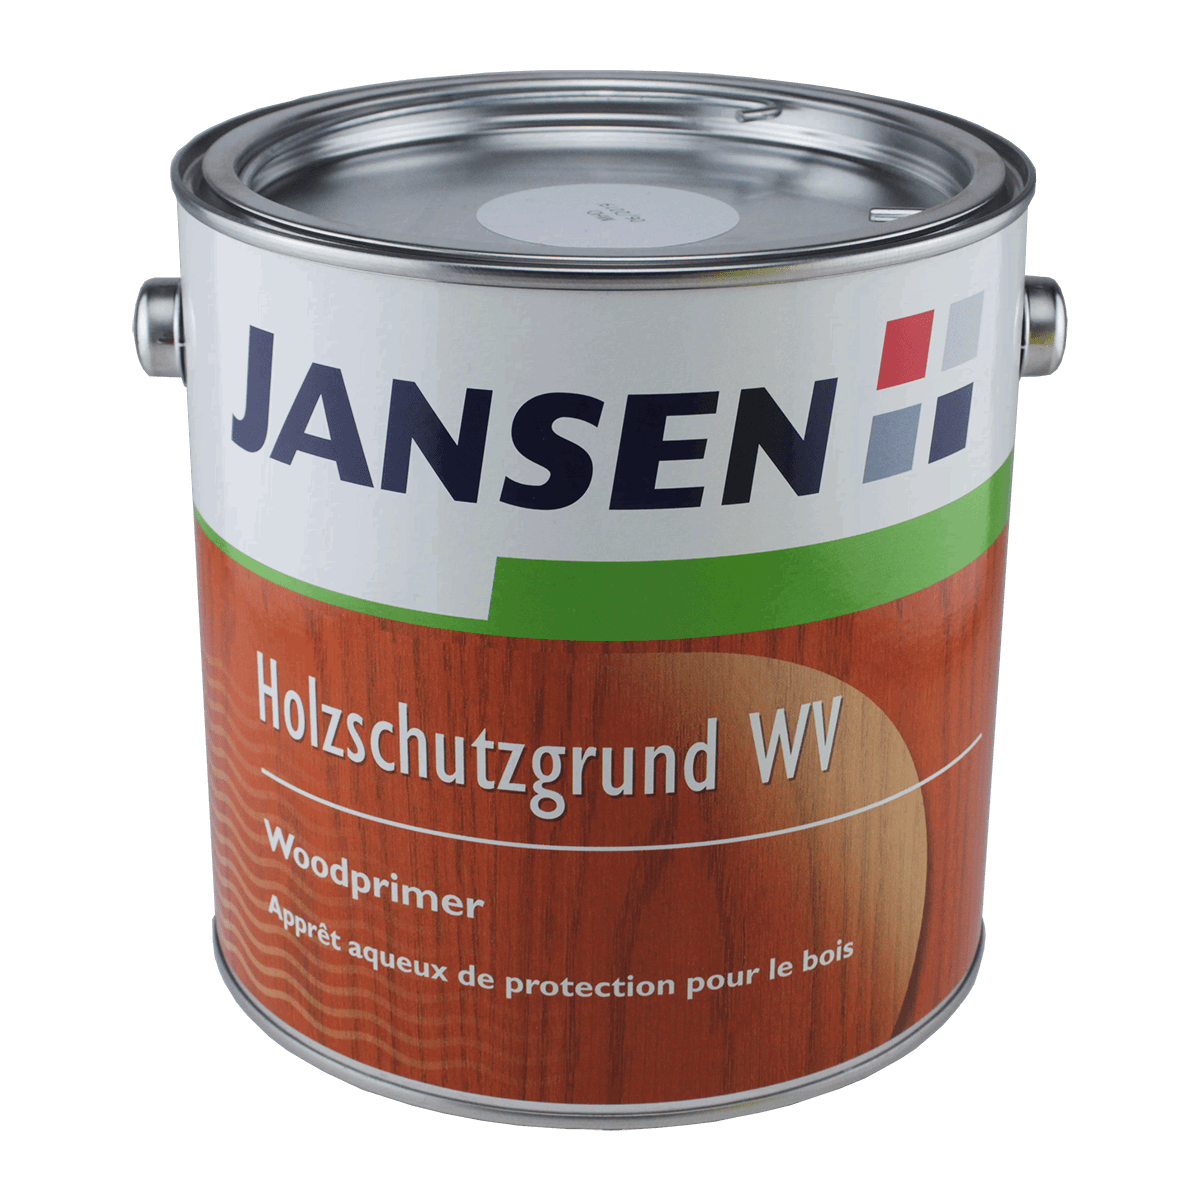 Jansen Holzschutzgrund / Woodprimer WV von Jansen